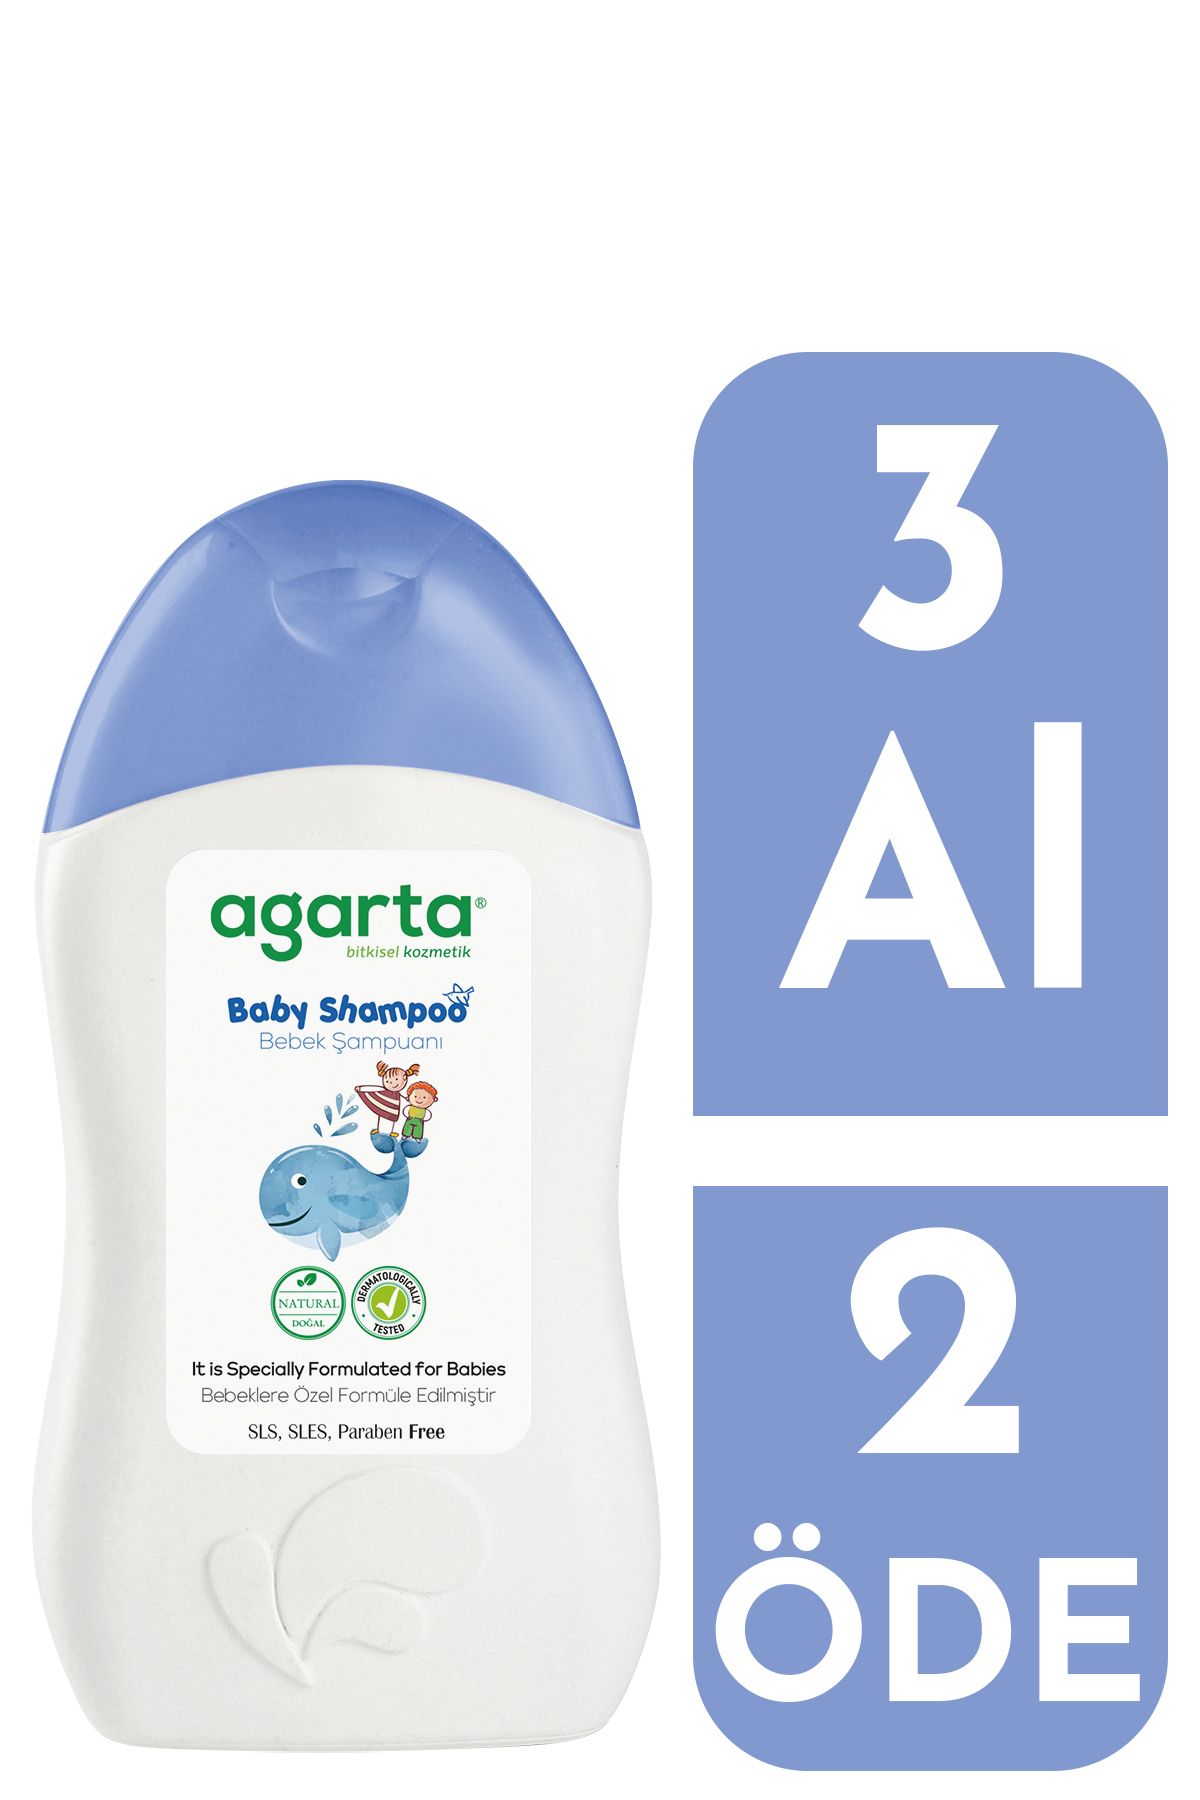 Agarta Doğal Bebek Erkek Çocuklarına Özel Bakım Şampuan 400 ml